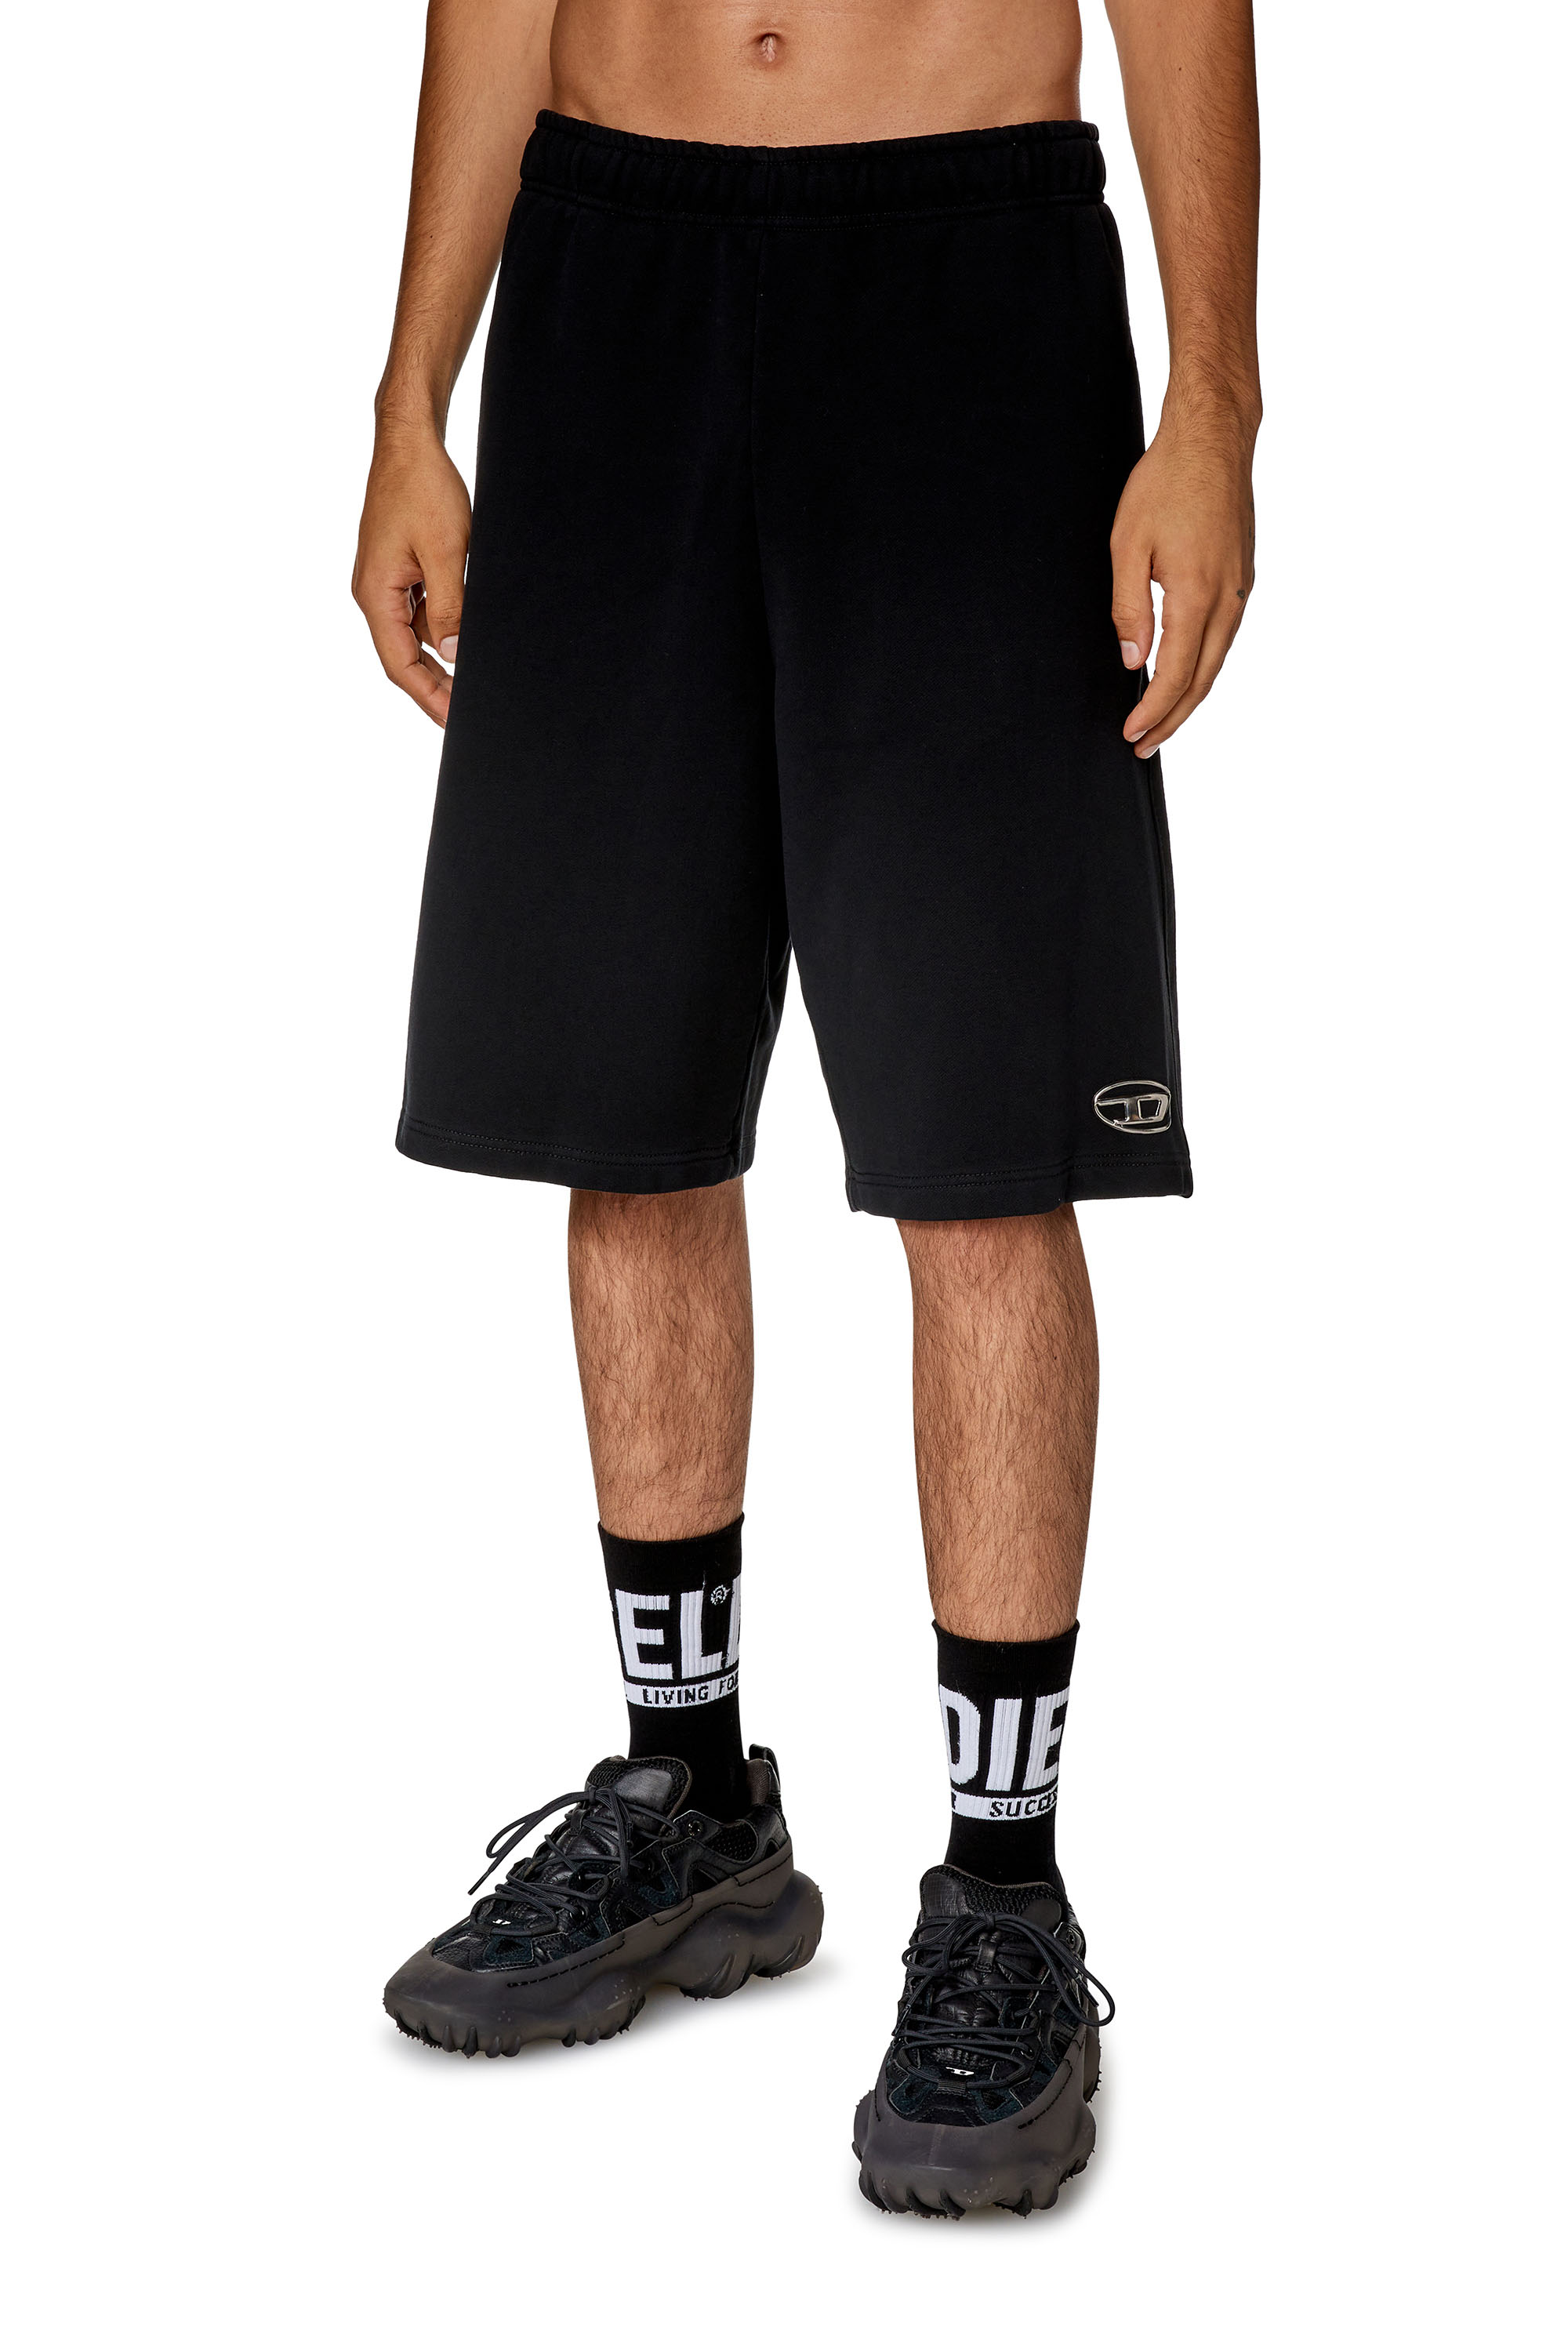 Diesel - Pantalones deportivos cortos con logotipo moldeado por inyección - Shorts - Hombre - Negro